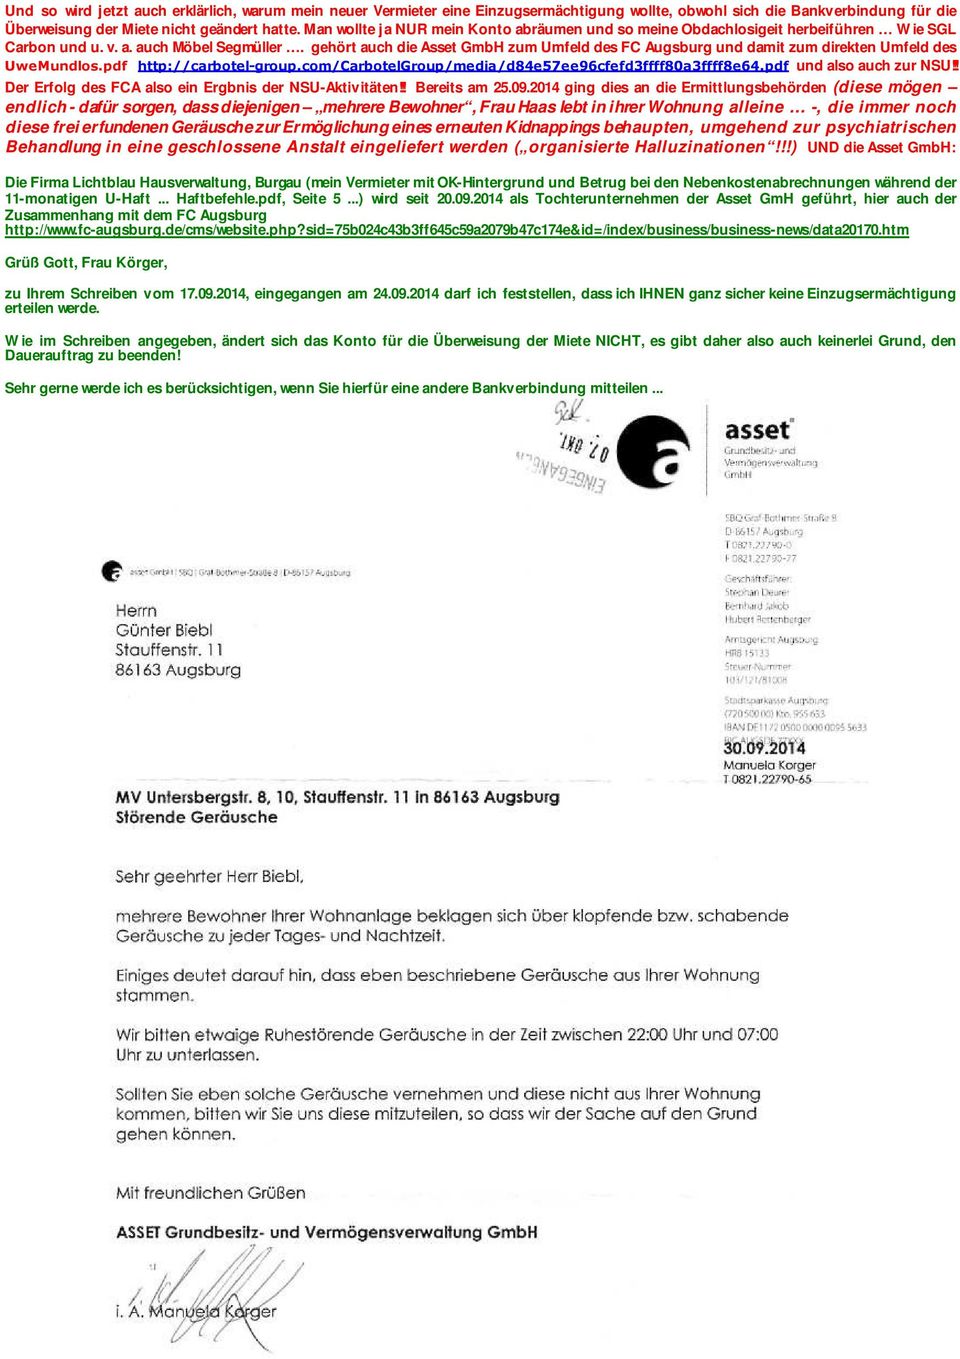 gehört auch die Asset GmbH zum Umfeld des FC Augsburg und damit zum direkten Umfeld des UweMundlos.pdf http://carbotel-group.com/carbotelgroup/media/d84e57ee96cfefd3ffff80a3ffff8e64.